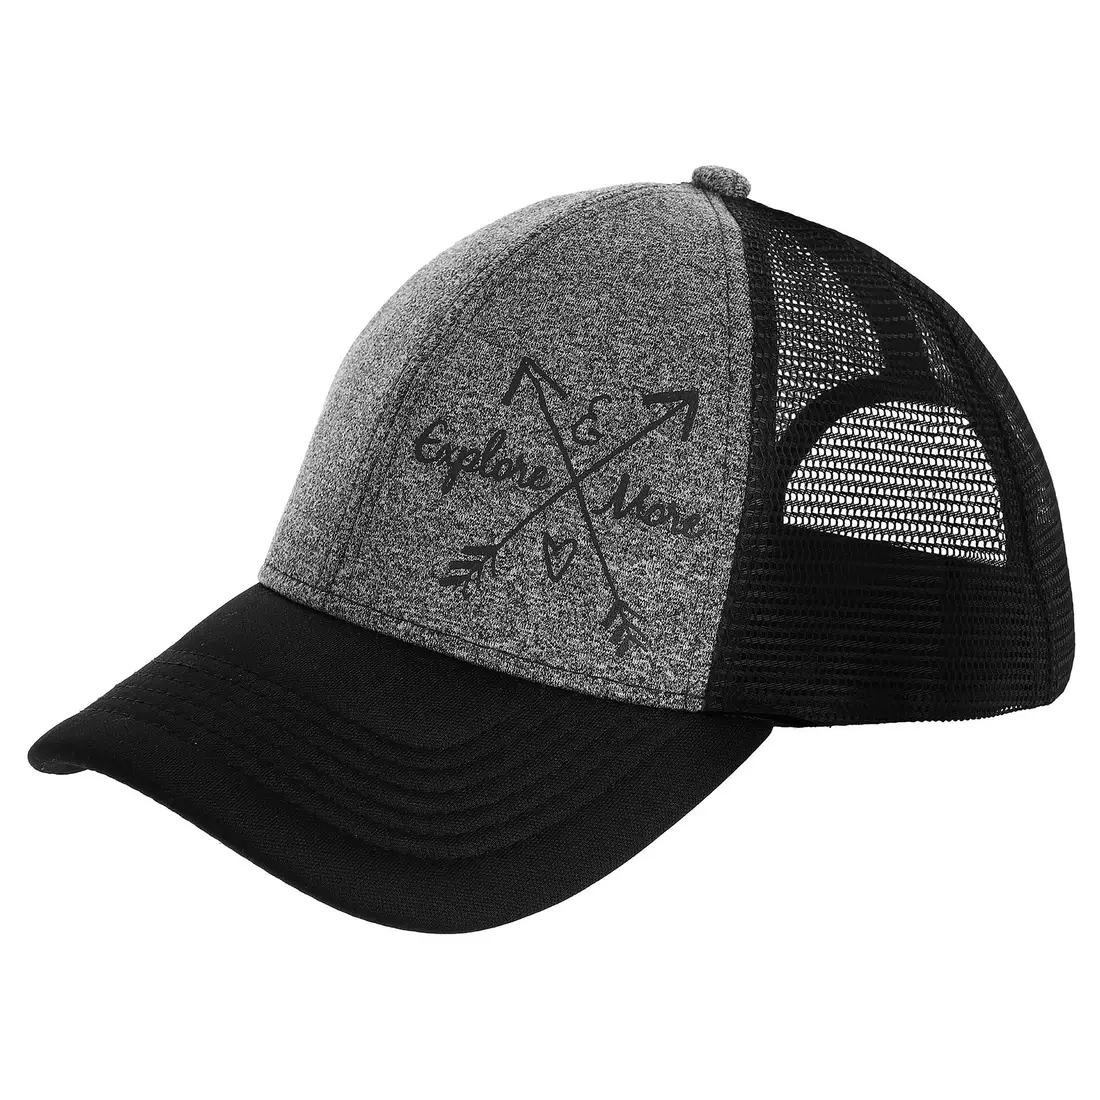 Viking Nevada Outdoor damska czapka z daszkiem, czarno-szara